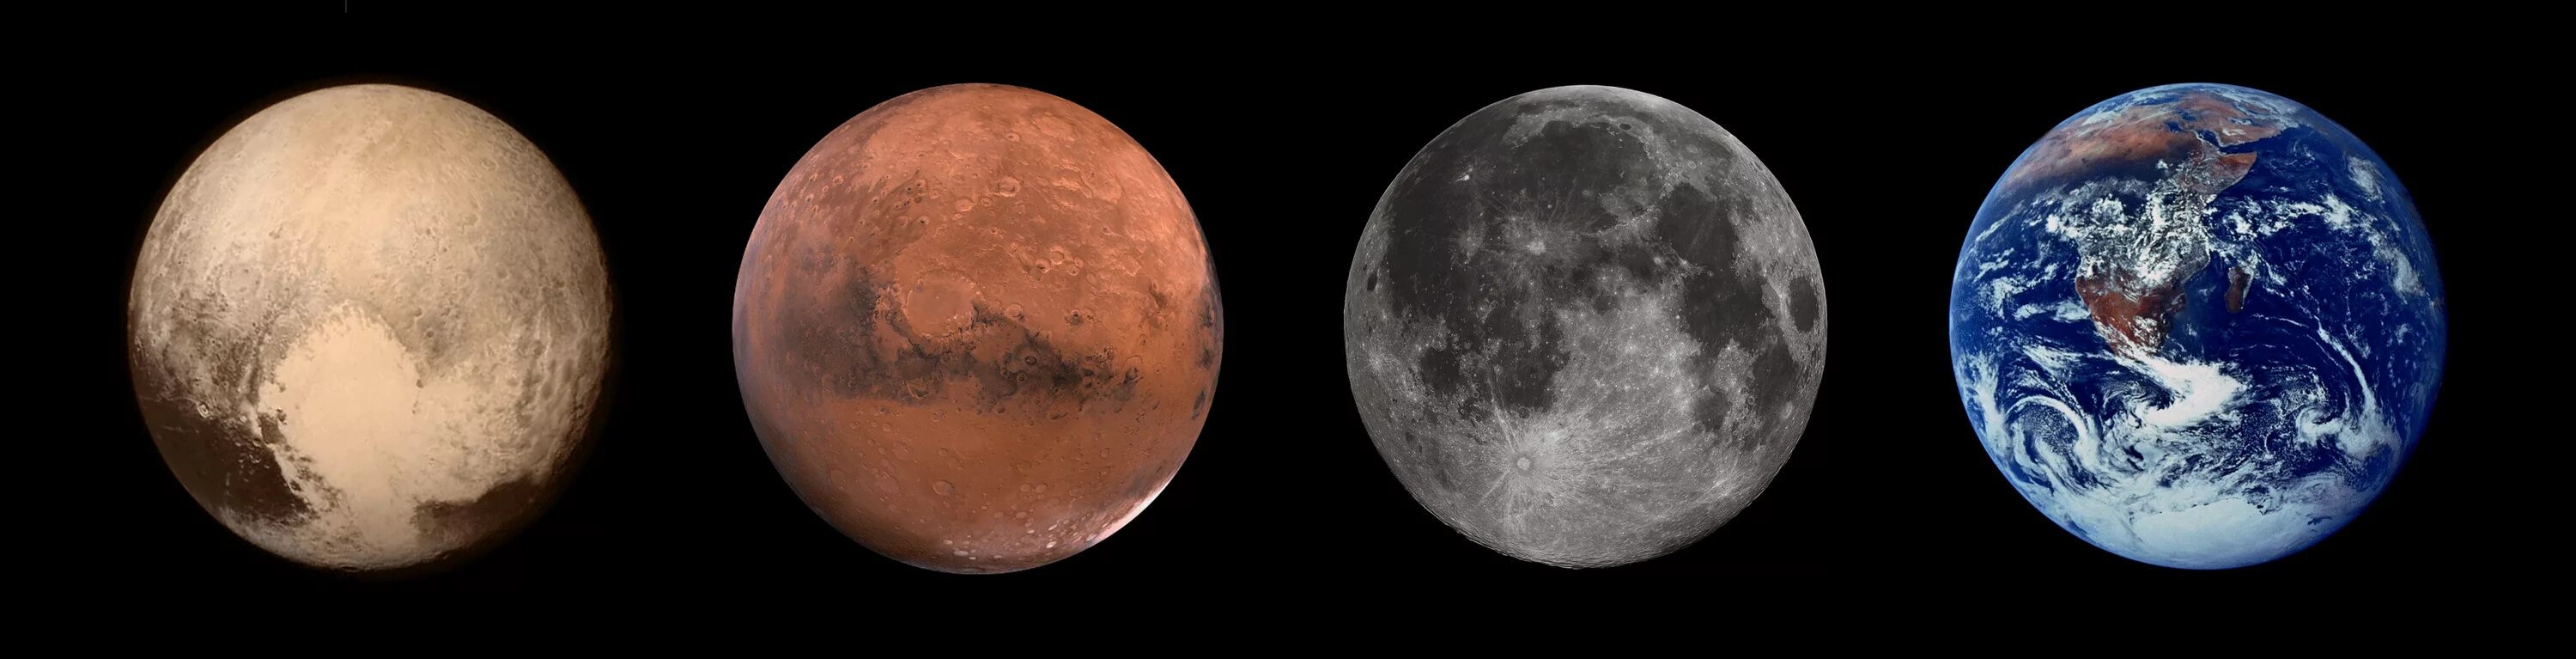 Планеты Плутон и Марс. Марс Луна Плутон. Плутон и Марс фото.